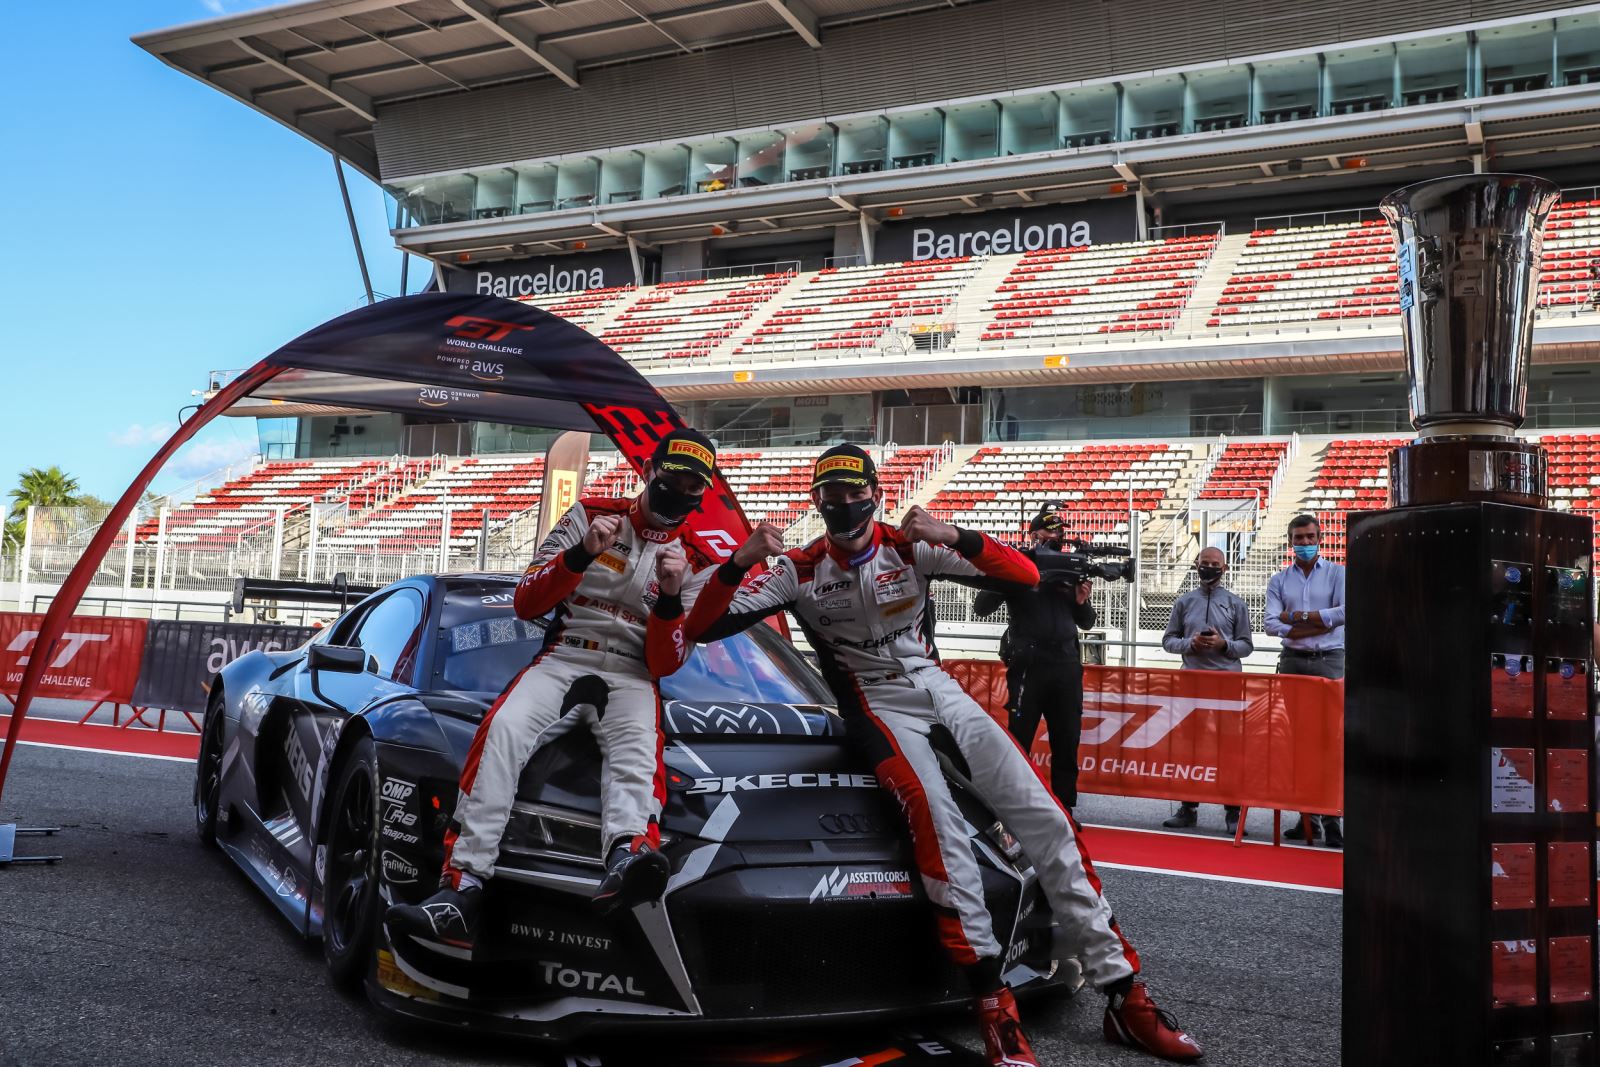 Vanthoor et Weerts et Audi WRT au top à Barcelone (Photo SRO)